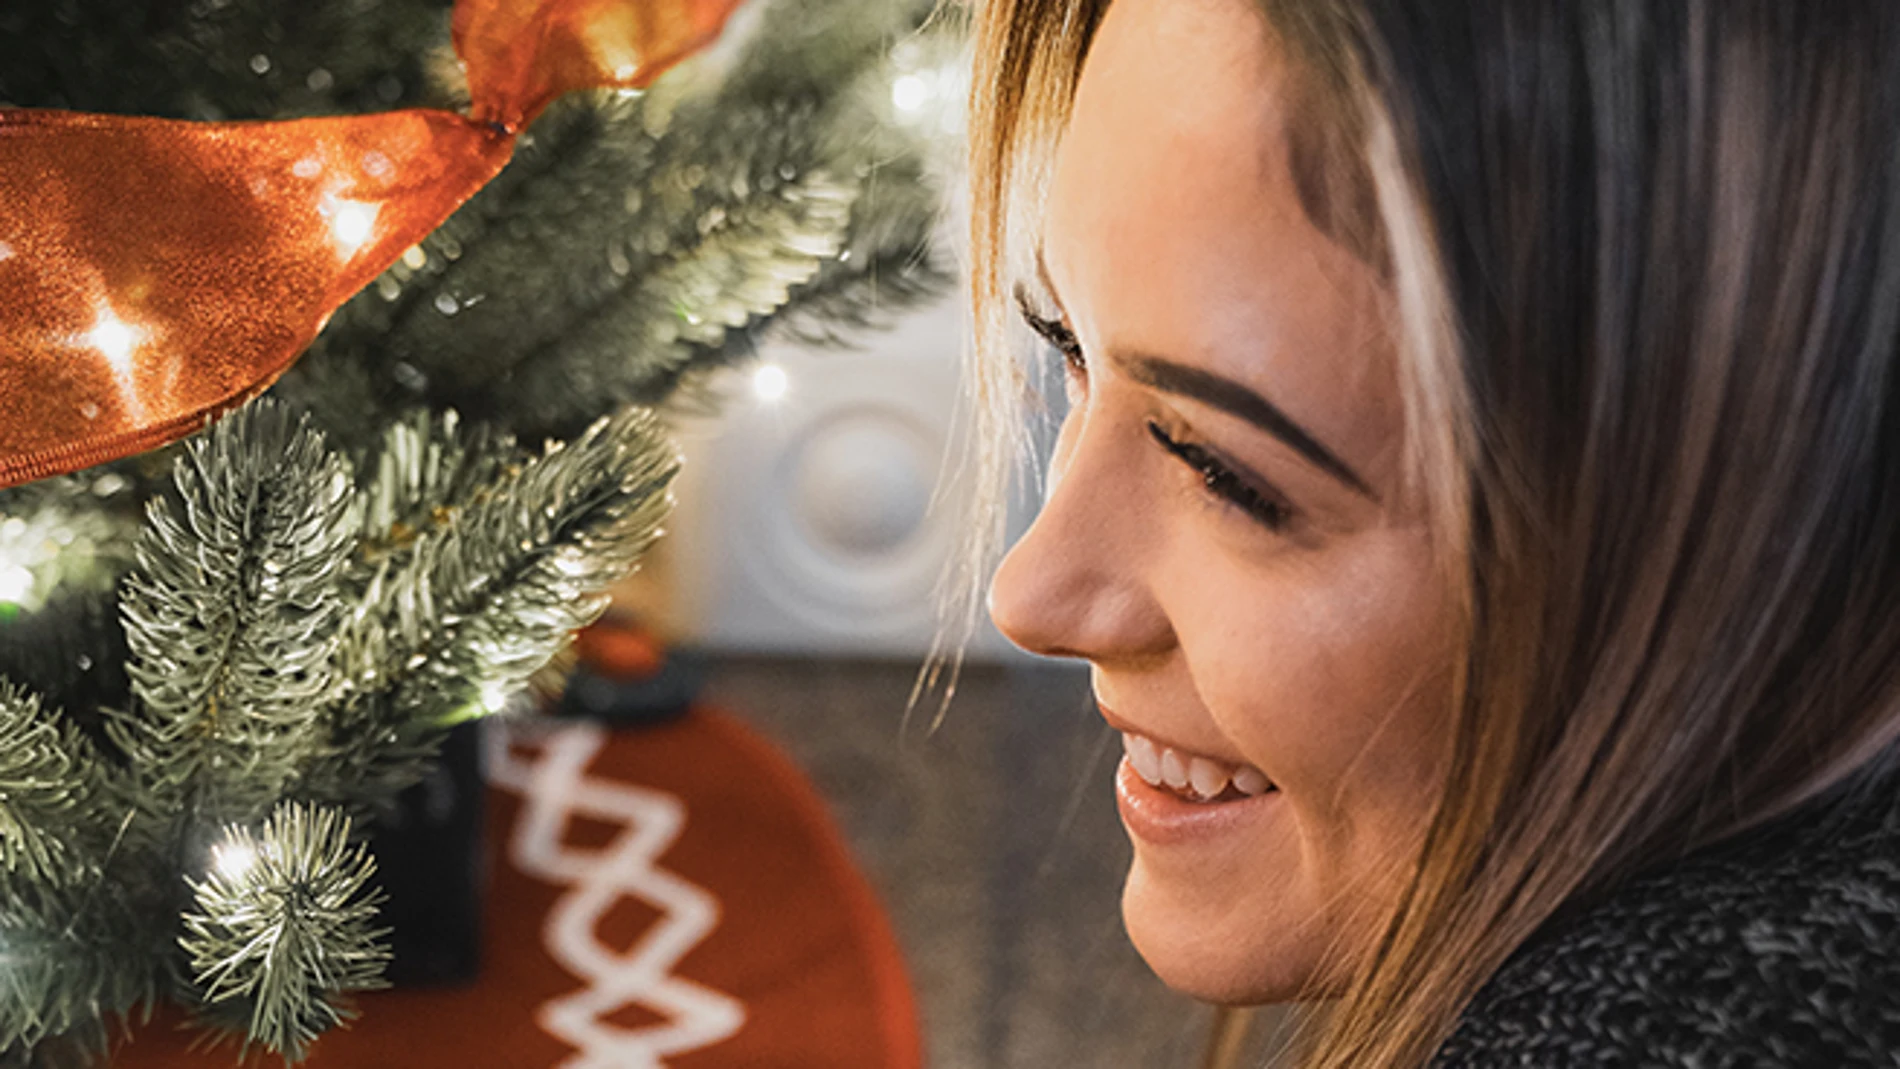 En la imagen, una mujer sonríe junto al árbol de Navidad.